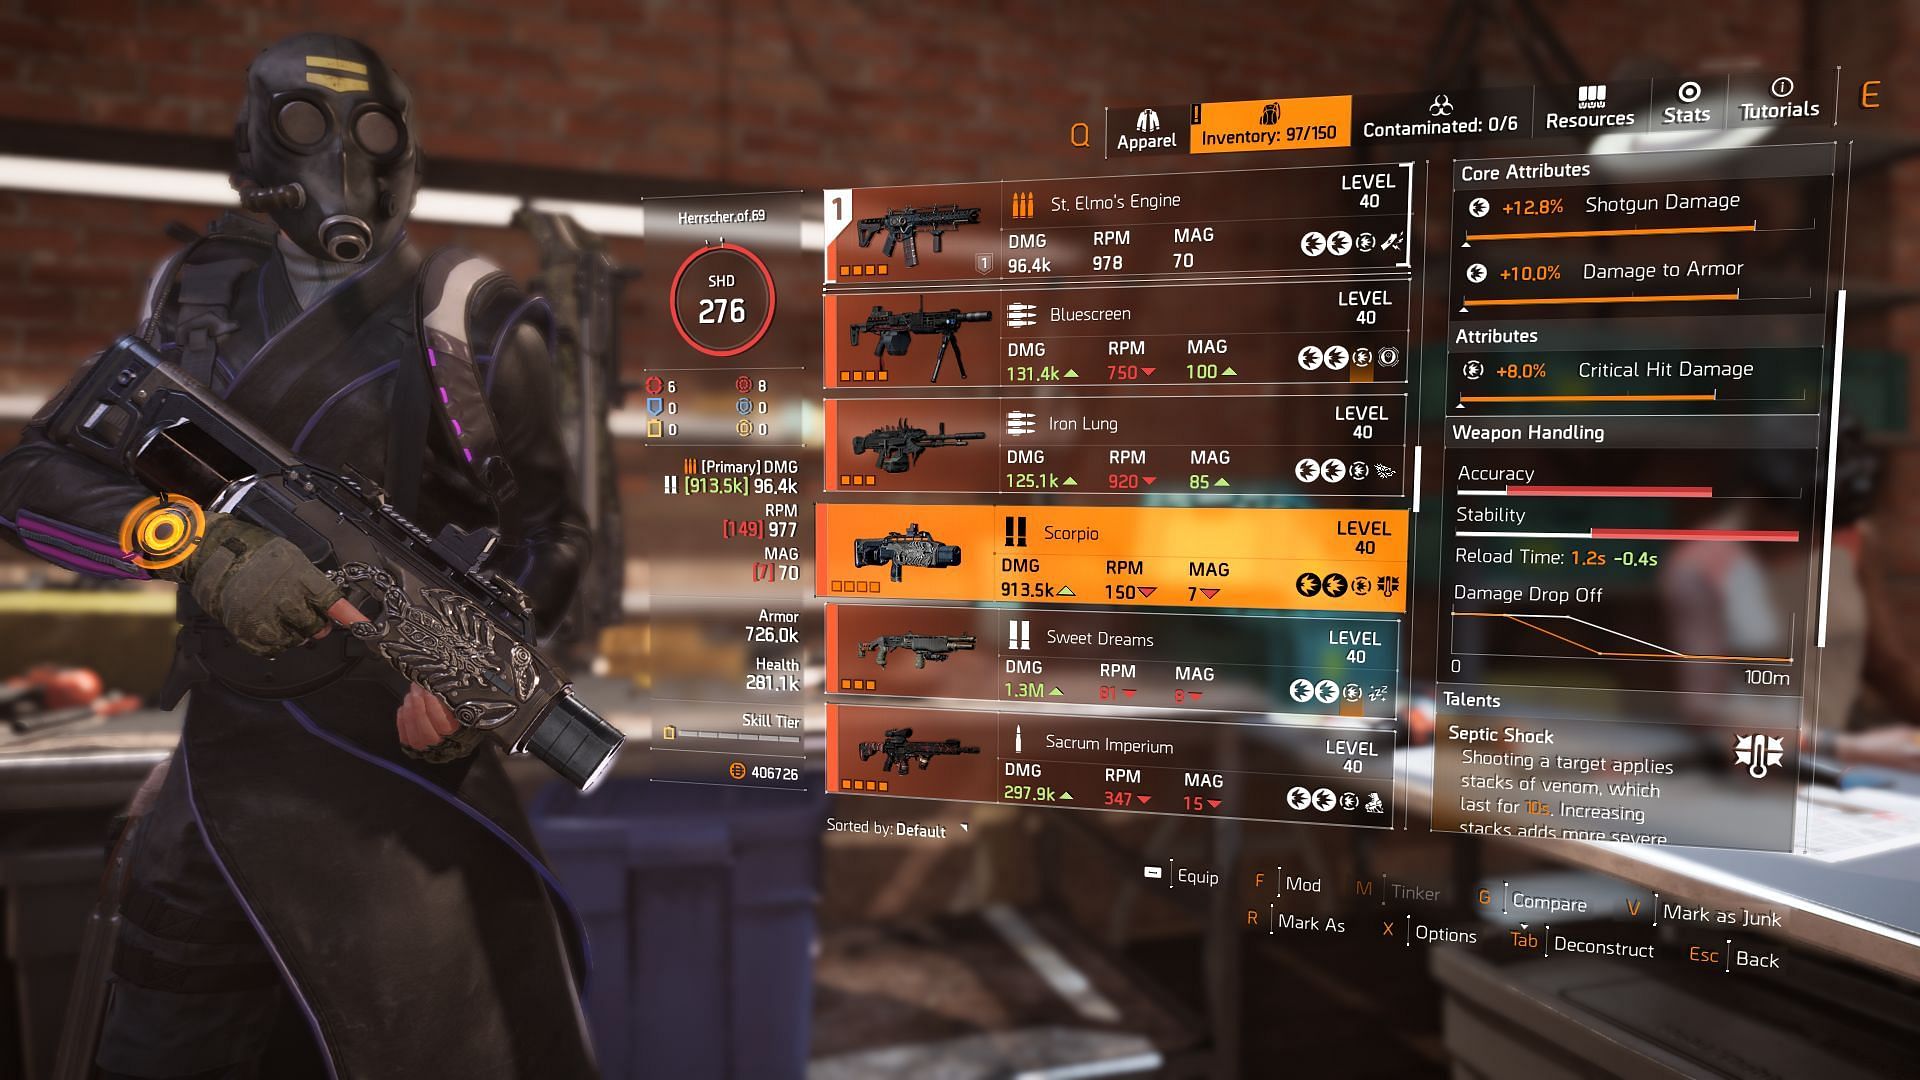 Scorpio Exotic Shotgun in The Division 2 (Image via Ubisoft)